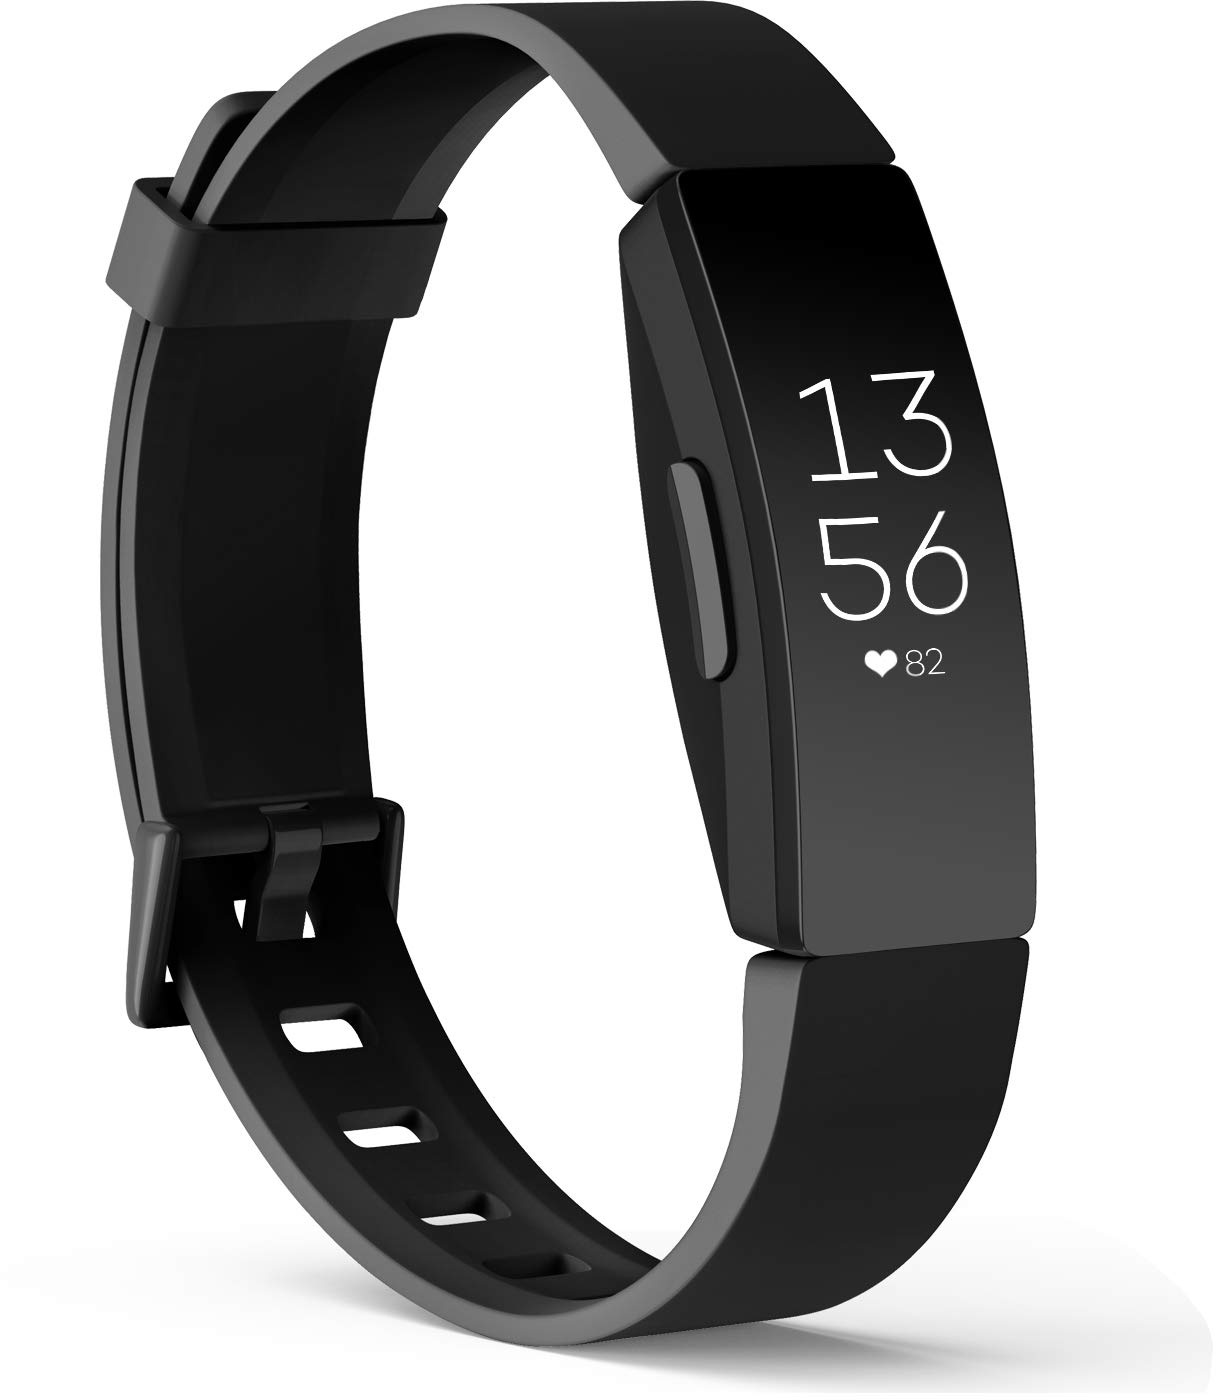 Amzpas Kompatibel mit Fitbit Inspire/Fitbit Inspire HR Armband, Weiches TPU Ersatzband Uhrenarmband Zubehör für Fitbit Inspire/Inspire HR Fitness Tracker (04 Schwarz, L)